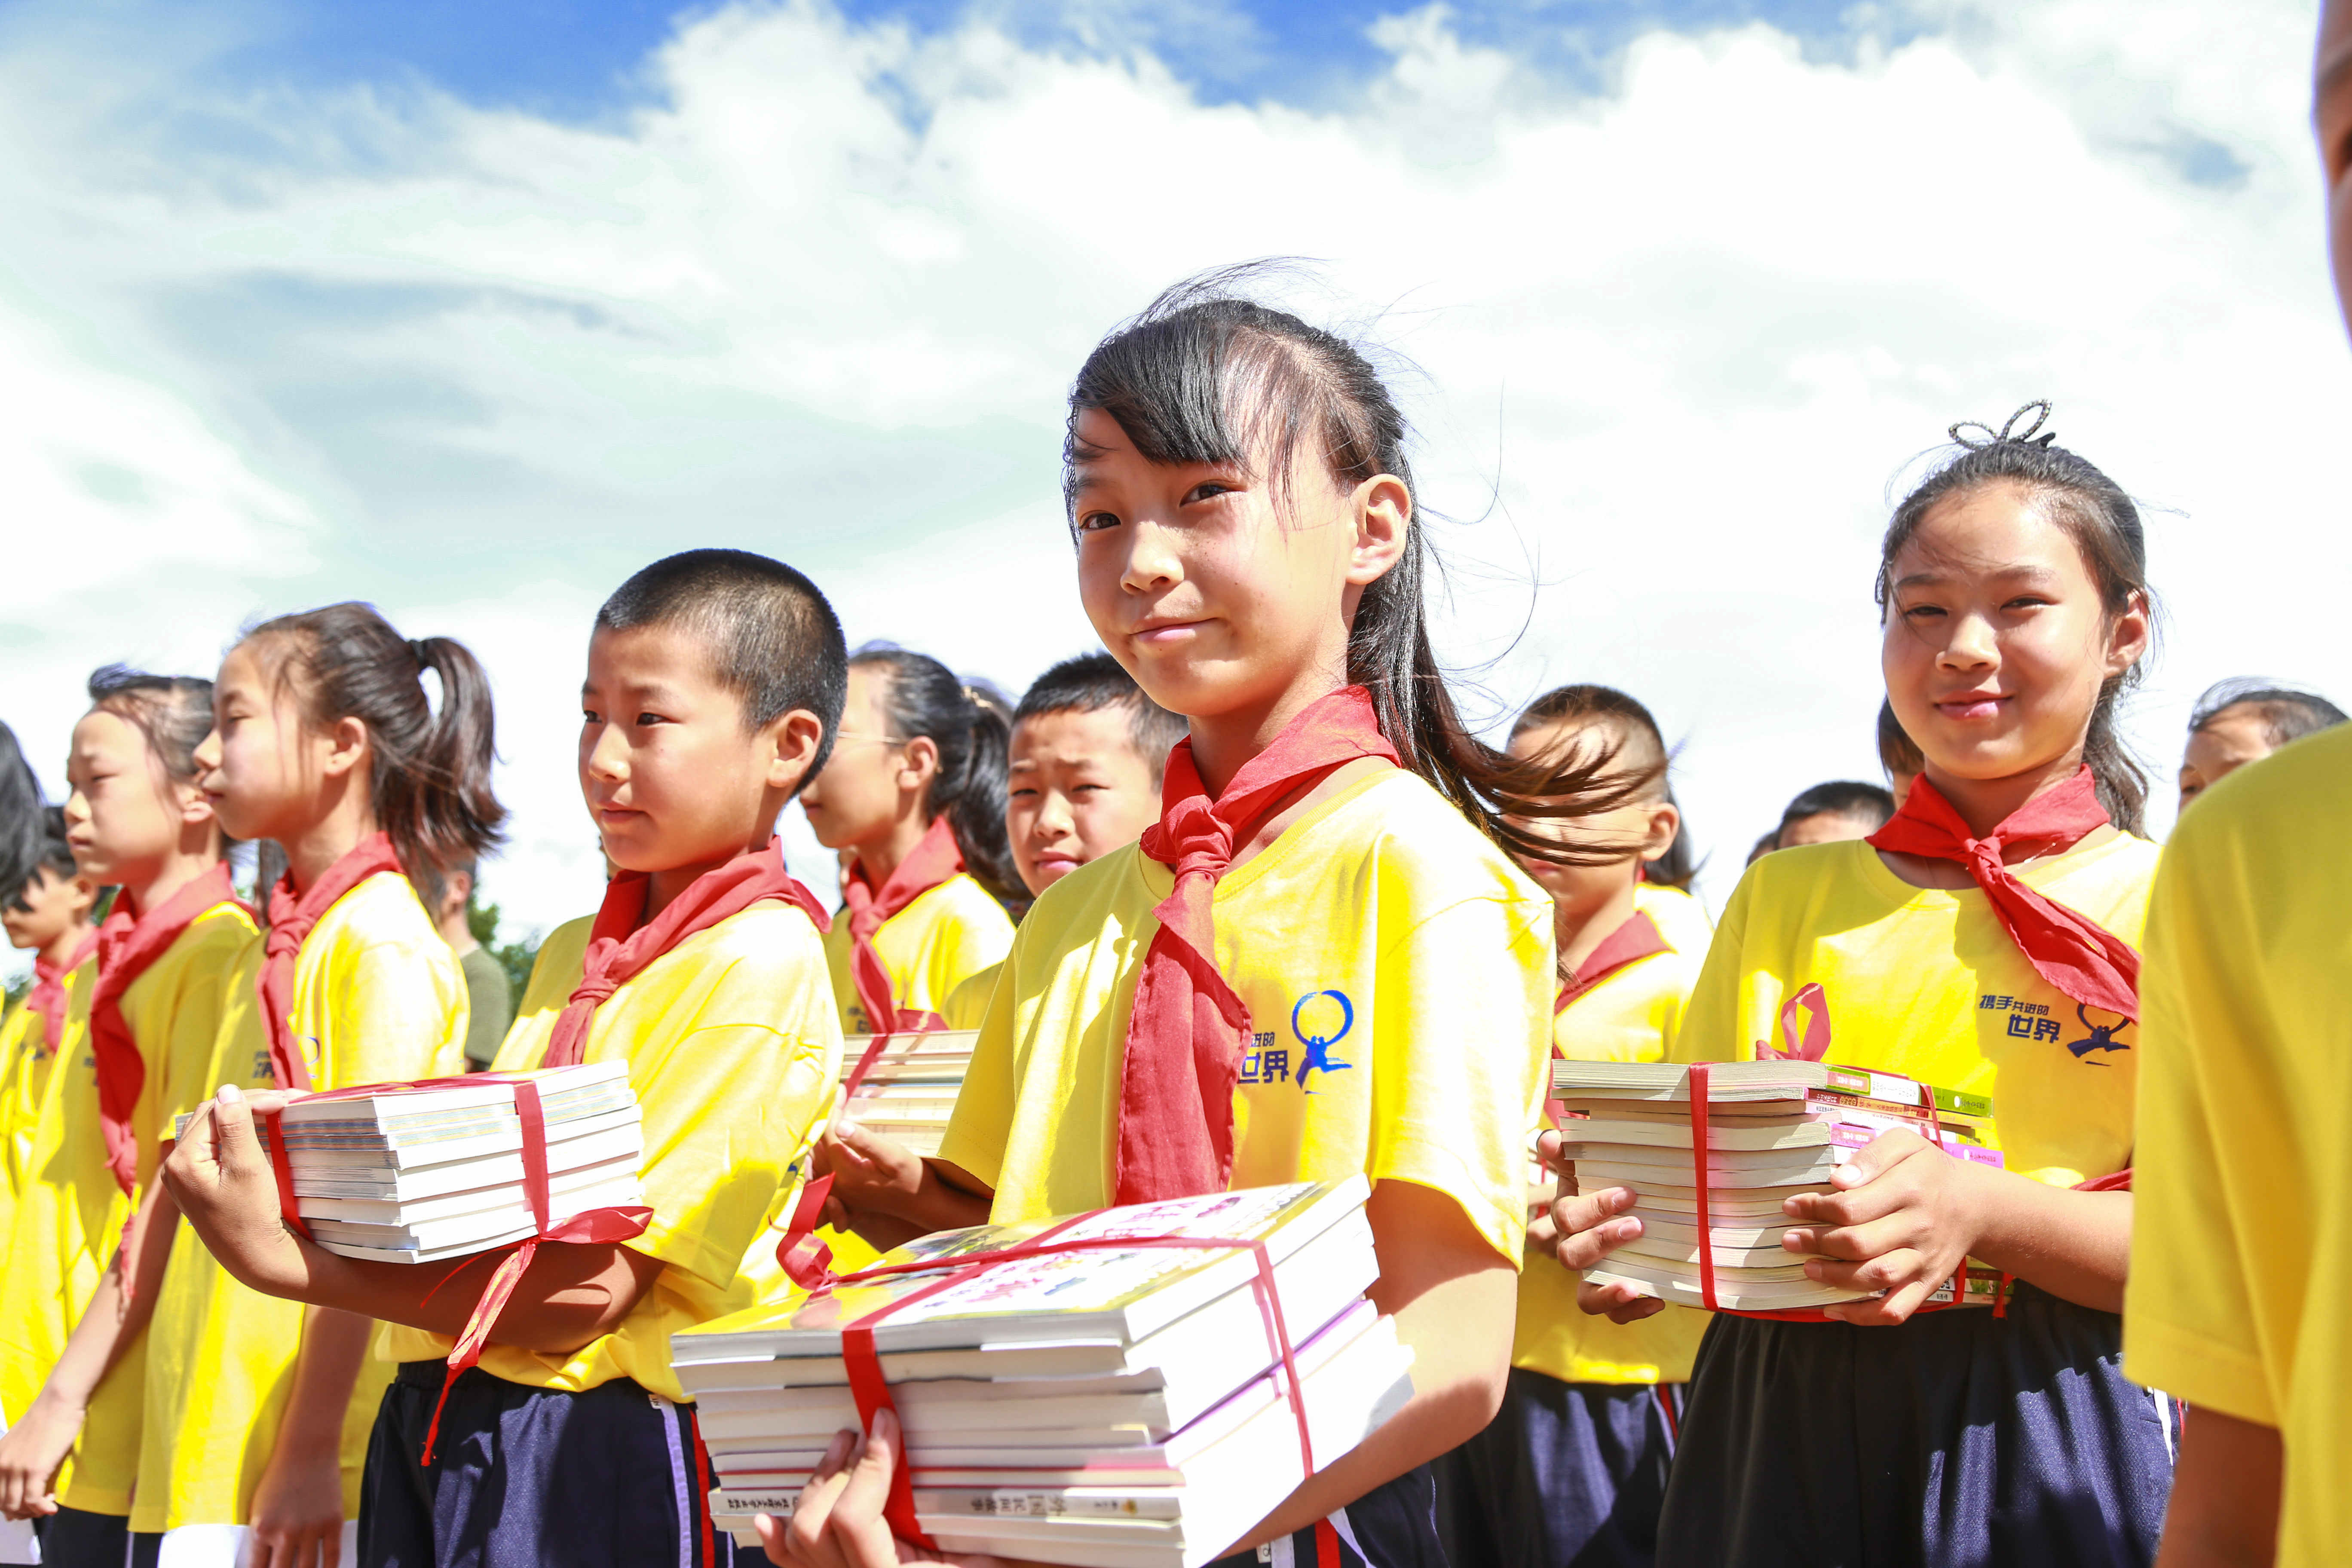 현대차의 중국 미래 세대 교육 지원을 위한 꿈의 교실 활동. 현대차그룹 제공